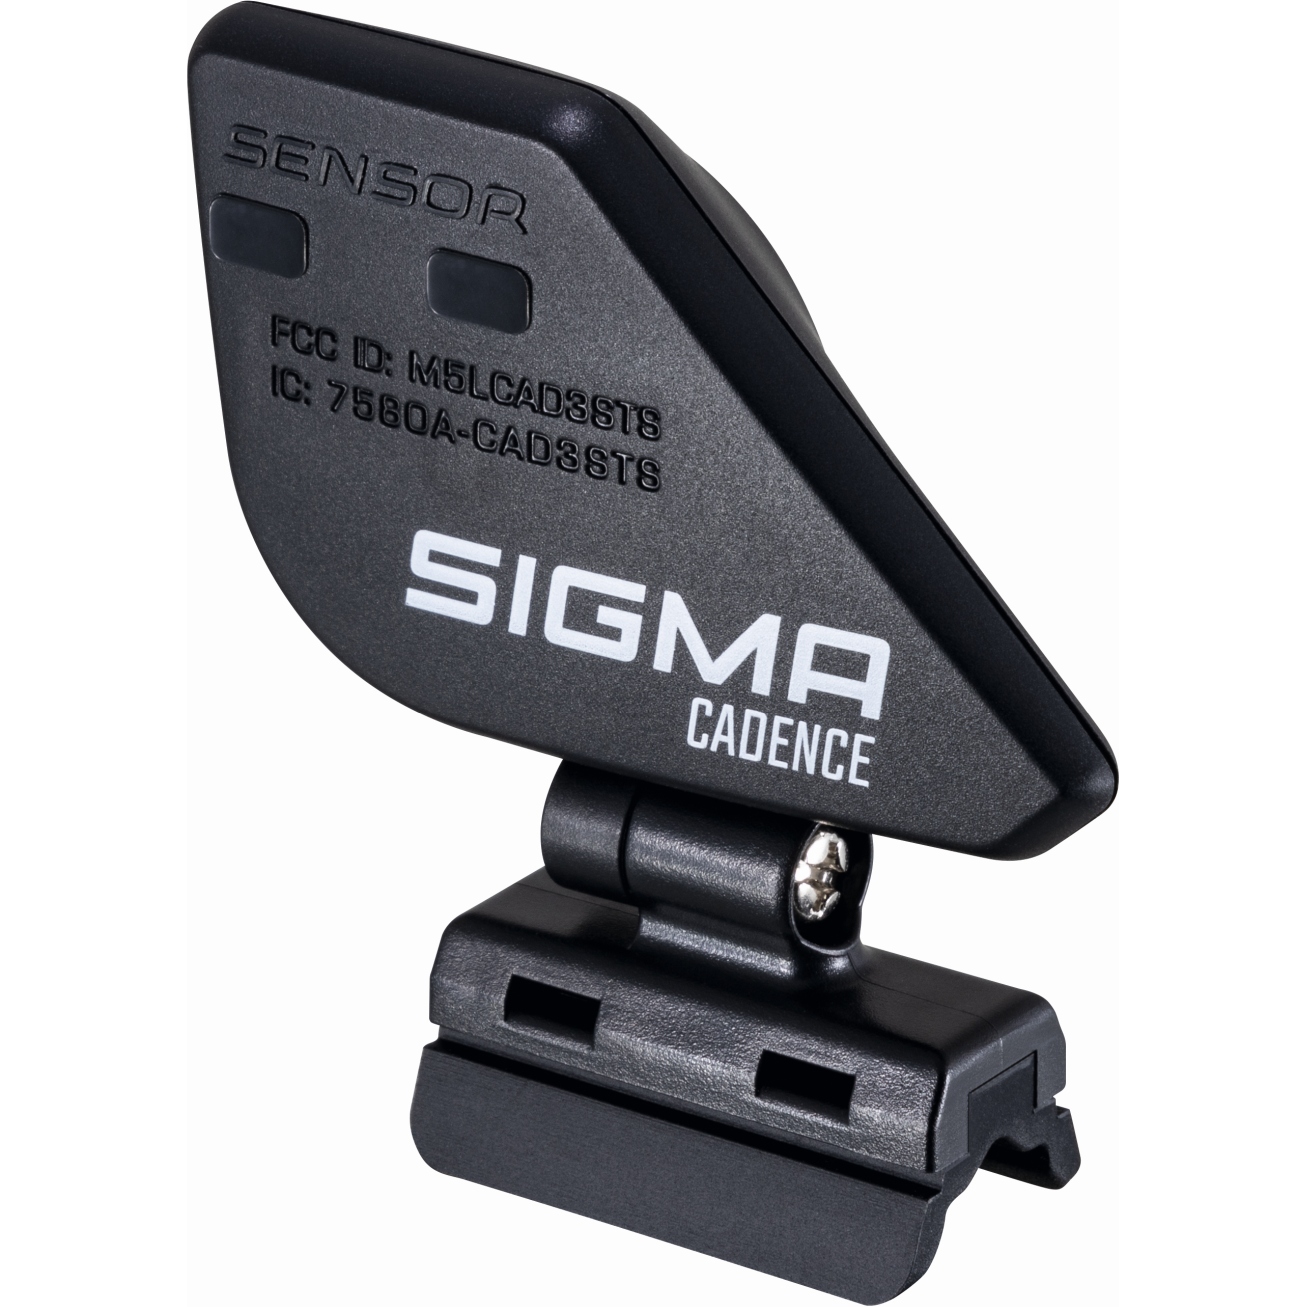 Produktbild von SIGMA STS Trittfrequenzsender für BC 12.0 WL CAD, 14.0 WL CAD